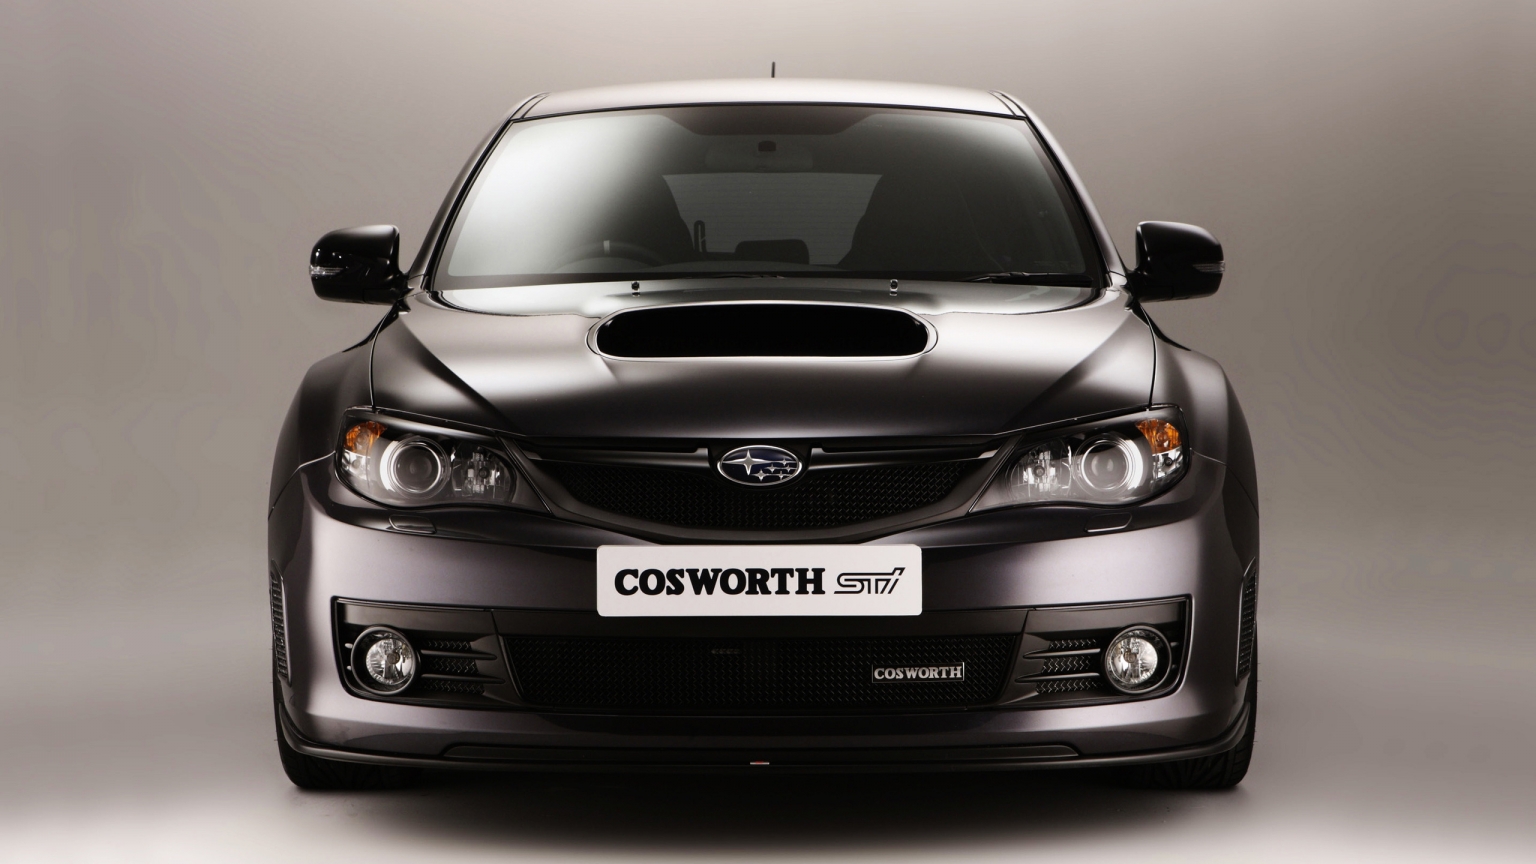 Subaru Cosworth Impreza for 1536 x 864 HDTV resolution